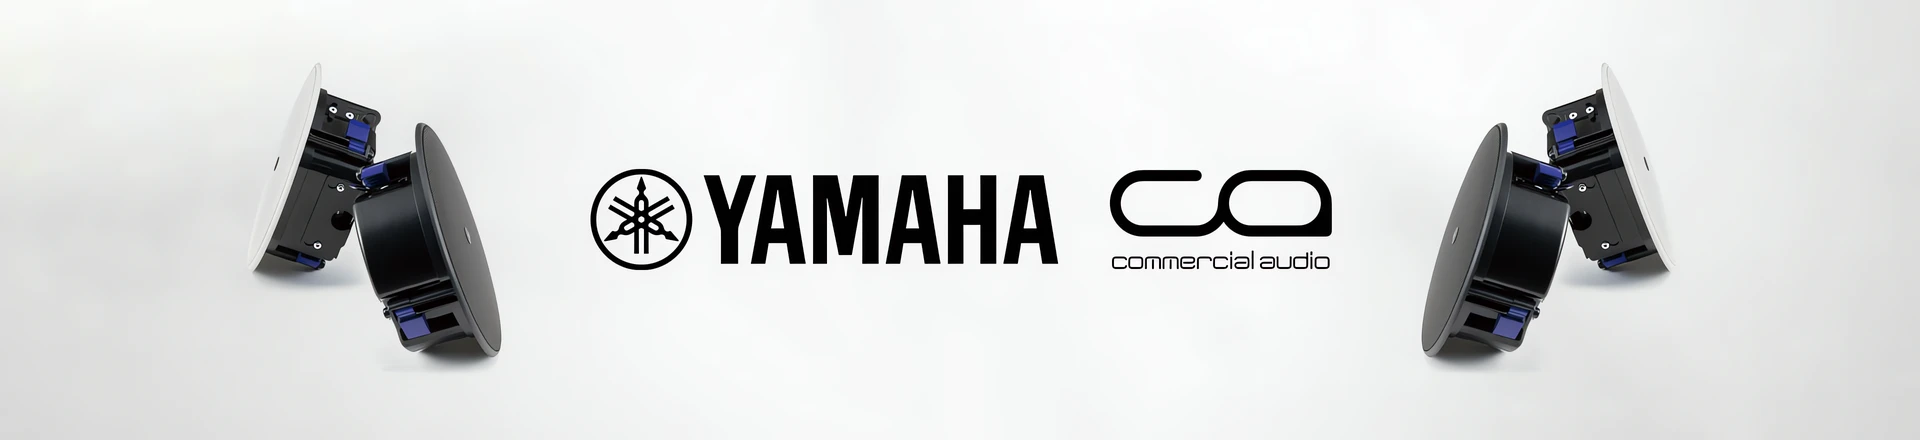 Yamaha "tworzy połączenia" podczas targów InfoComm'19